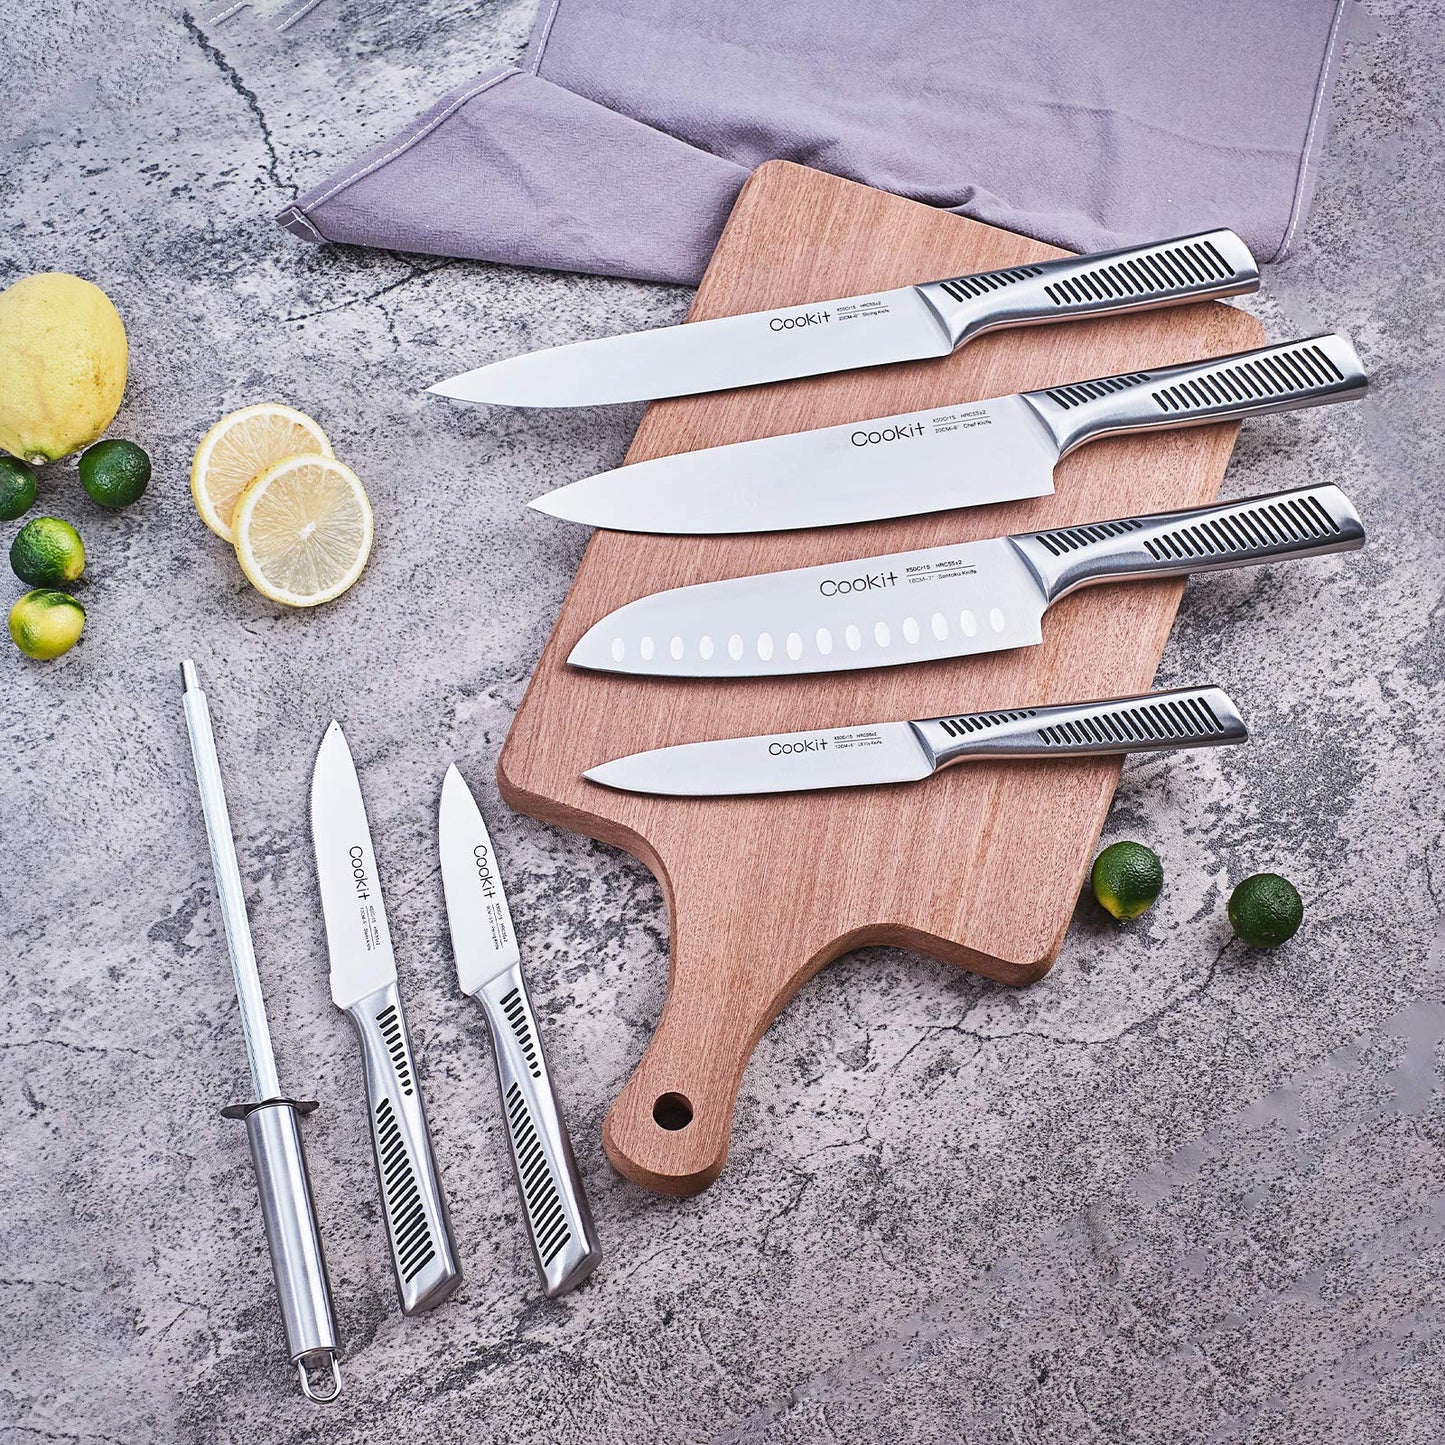 cookit kitchen knife set german stainless steel